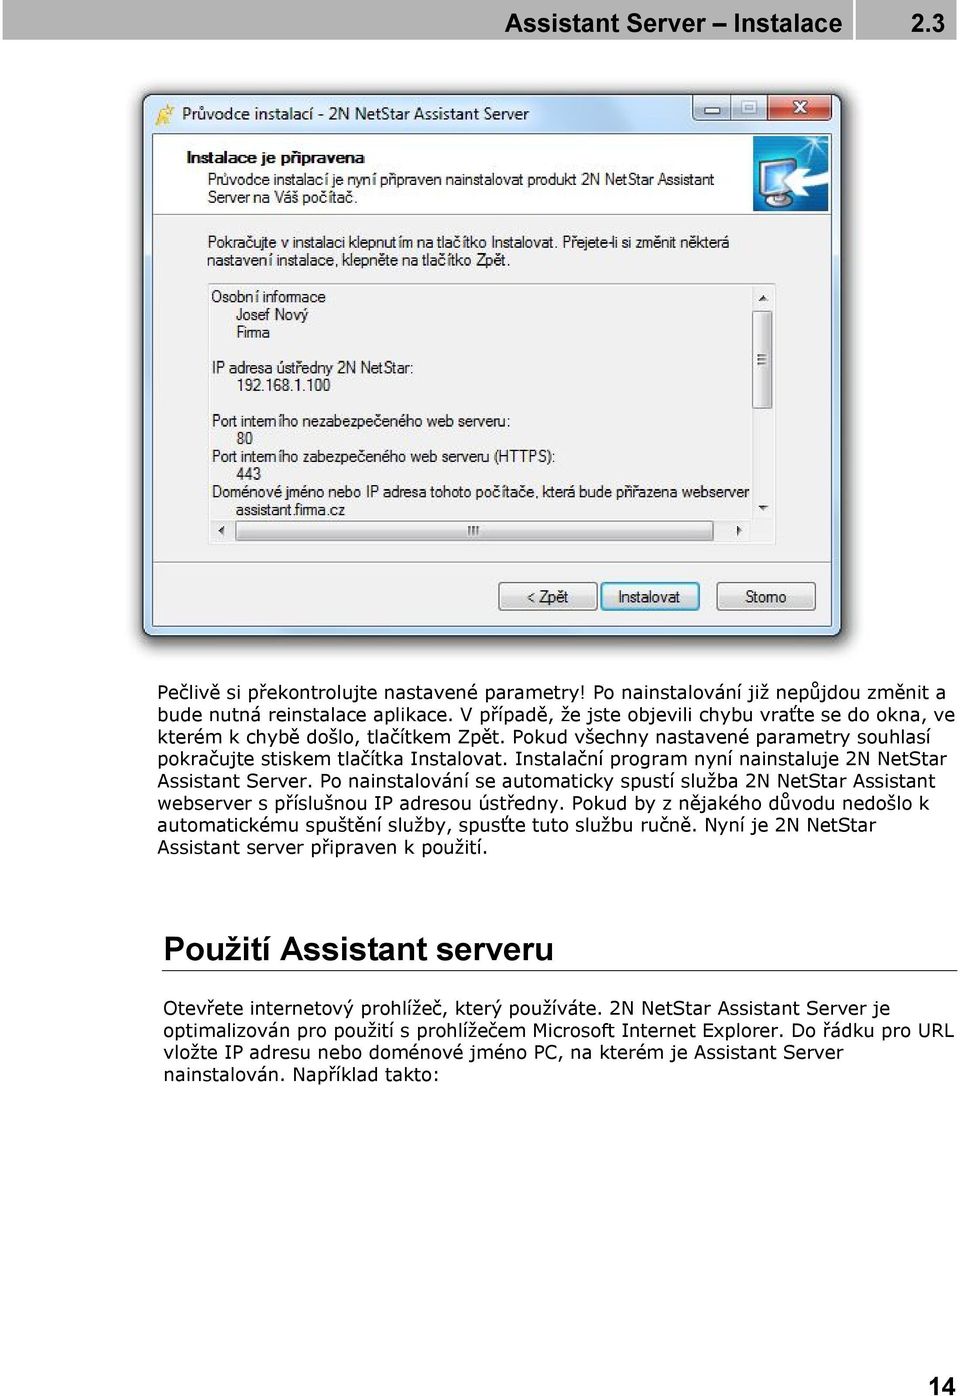 Instalační program nyní nainstaluje 2N NetStar Assistant Server. Po nainstalování se automaticky spustí služba 2N NetStar Assistant webserver s příslušnou IP adresou ústředny.